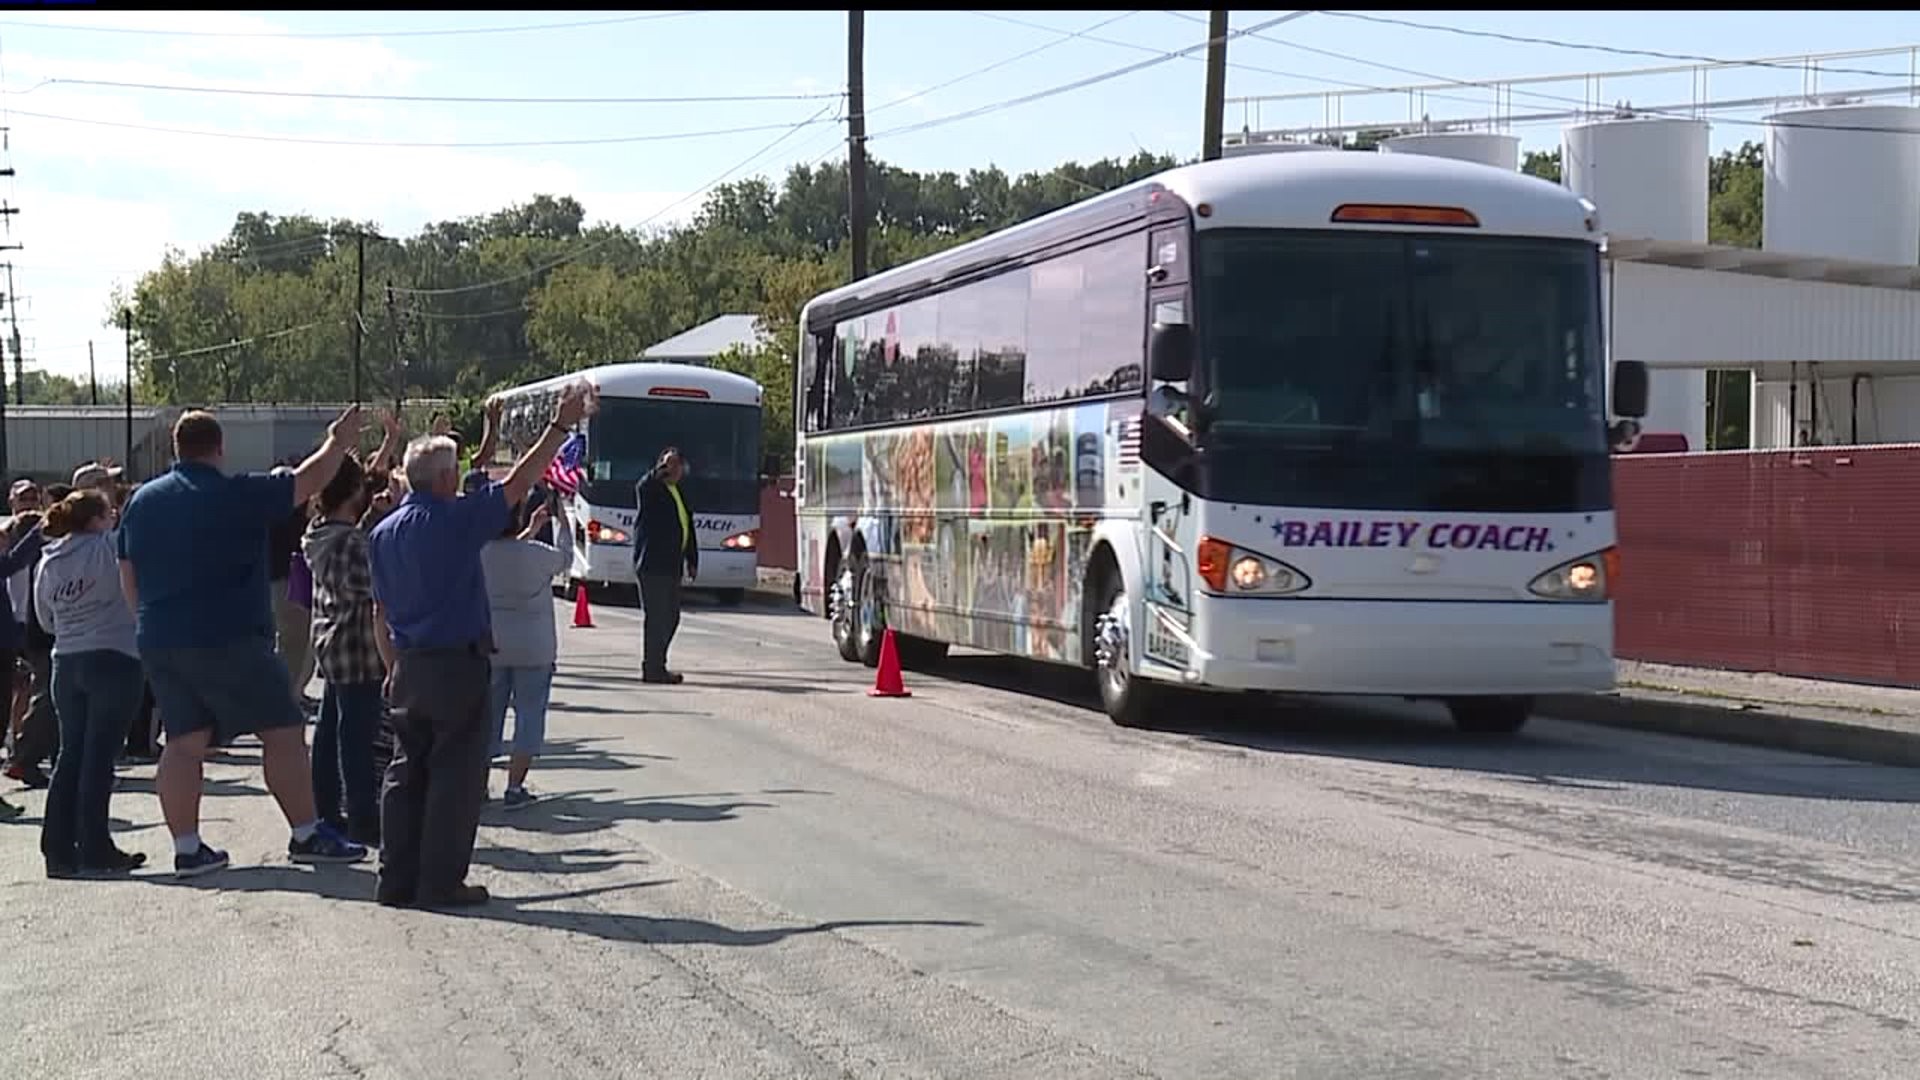 Bailey Coach buses depart for Texas